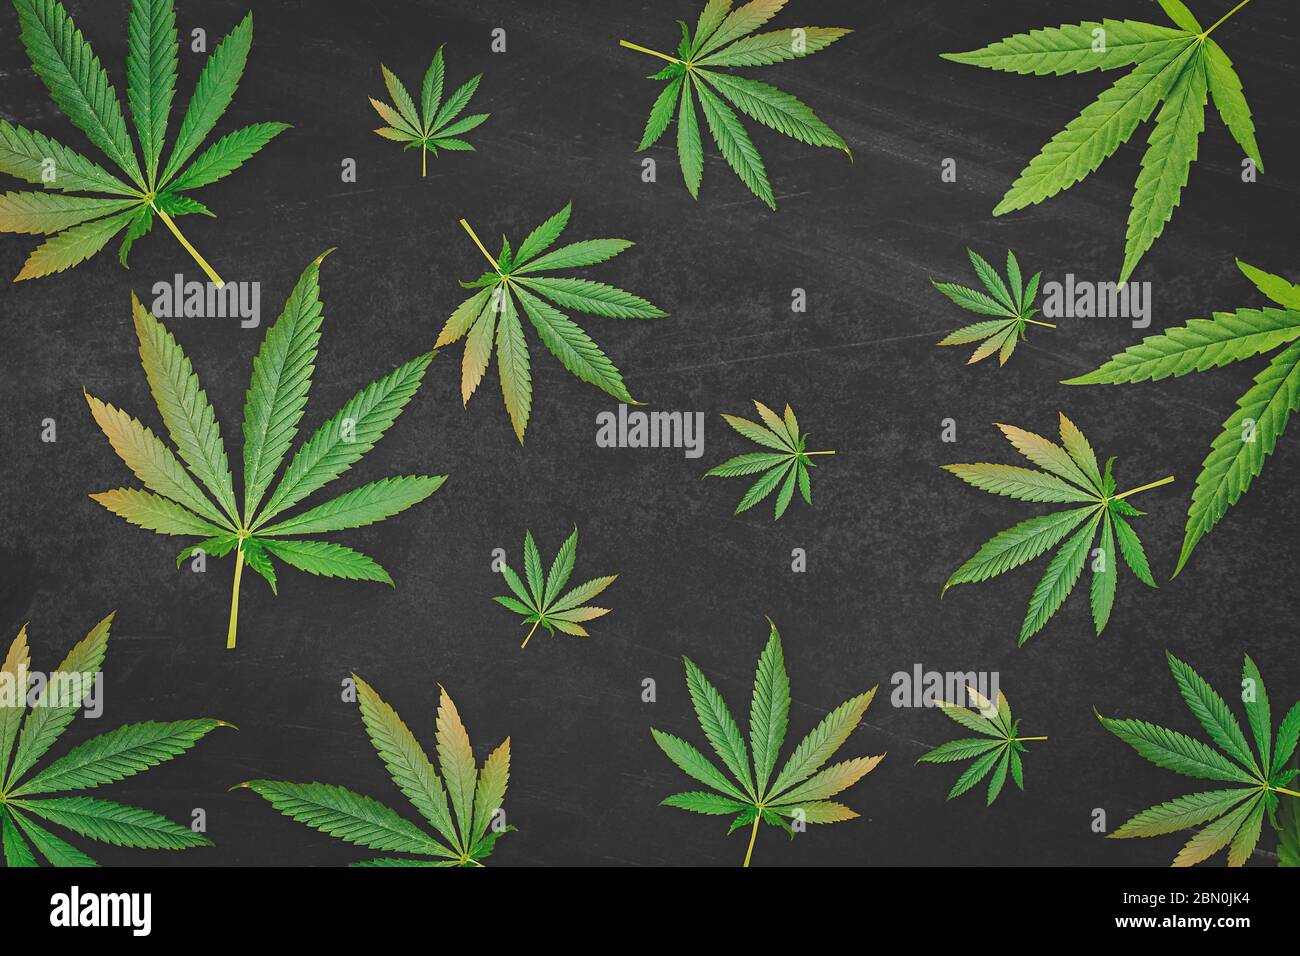 Motif de feuilles de cannabis sur fond noir rayé Banque D'Images